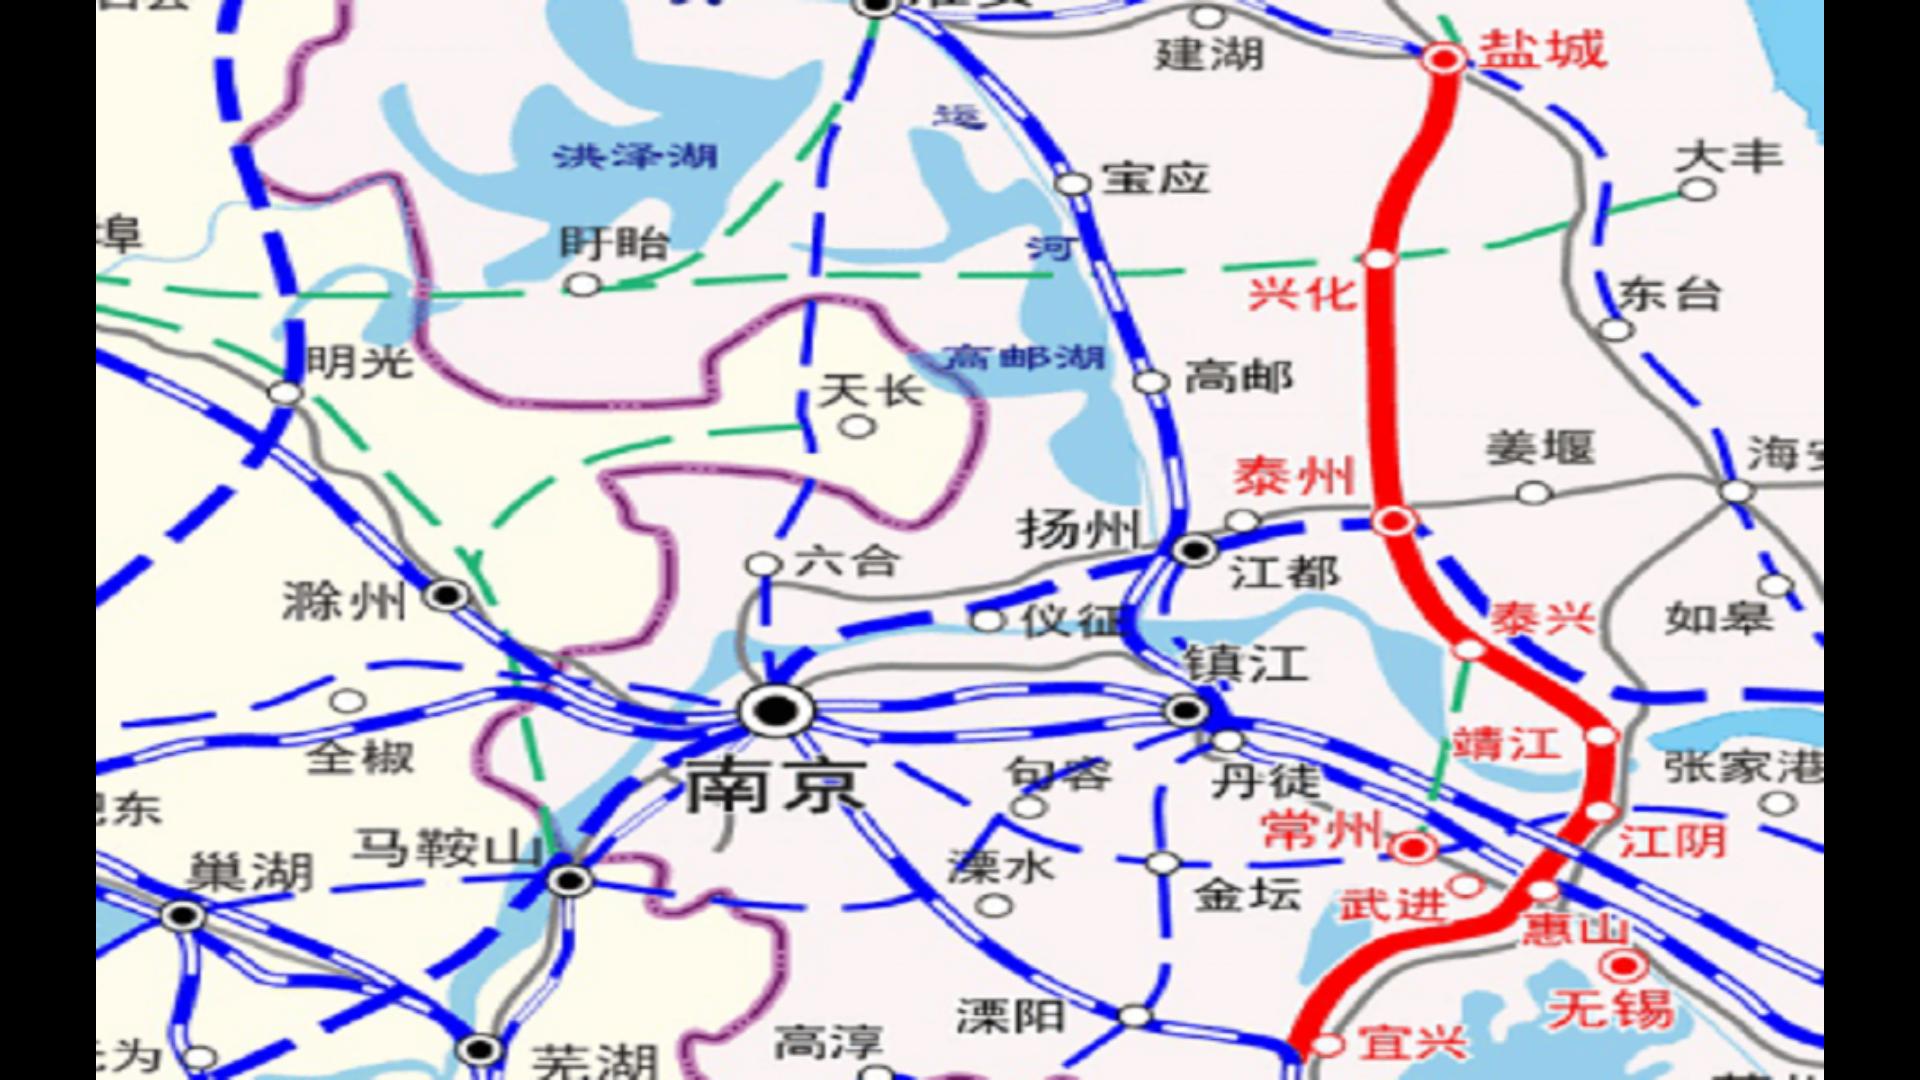 盐宜高速铁路,纵贯鲁东南,苏北,苏中,苏南